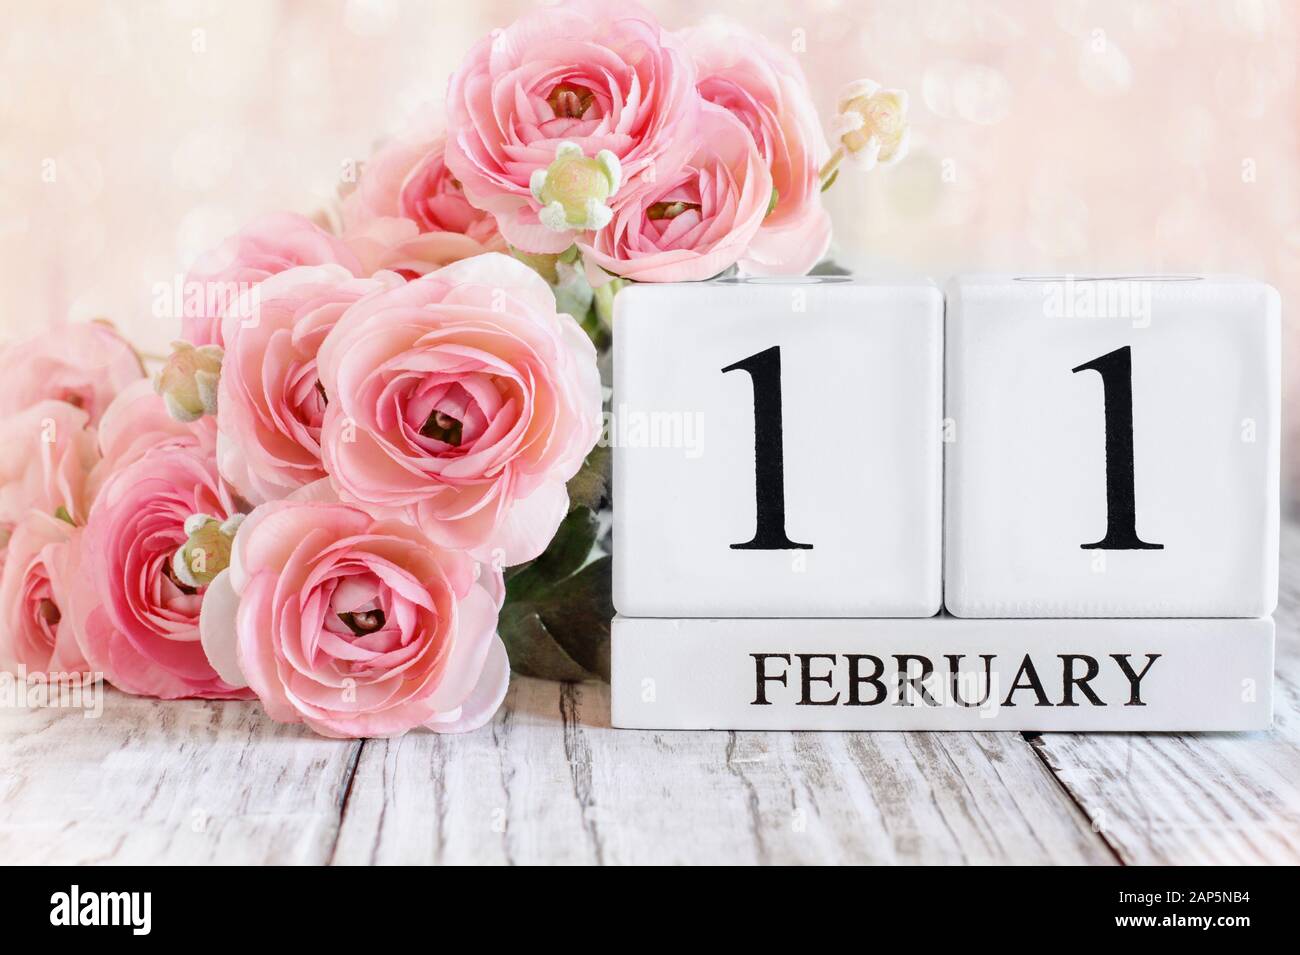 Blocs calendrier en bois blanc avec la date du 11 février et fleurs de ranunculus roses sur une table en bois. Mise au point sélective avec arrière-plan flou. Banque D'Images